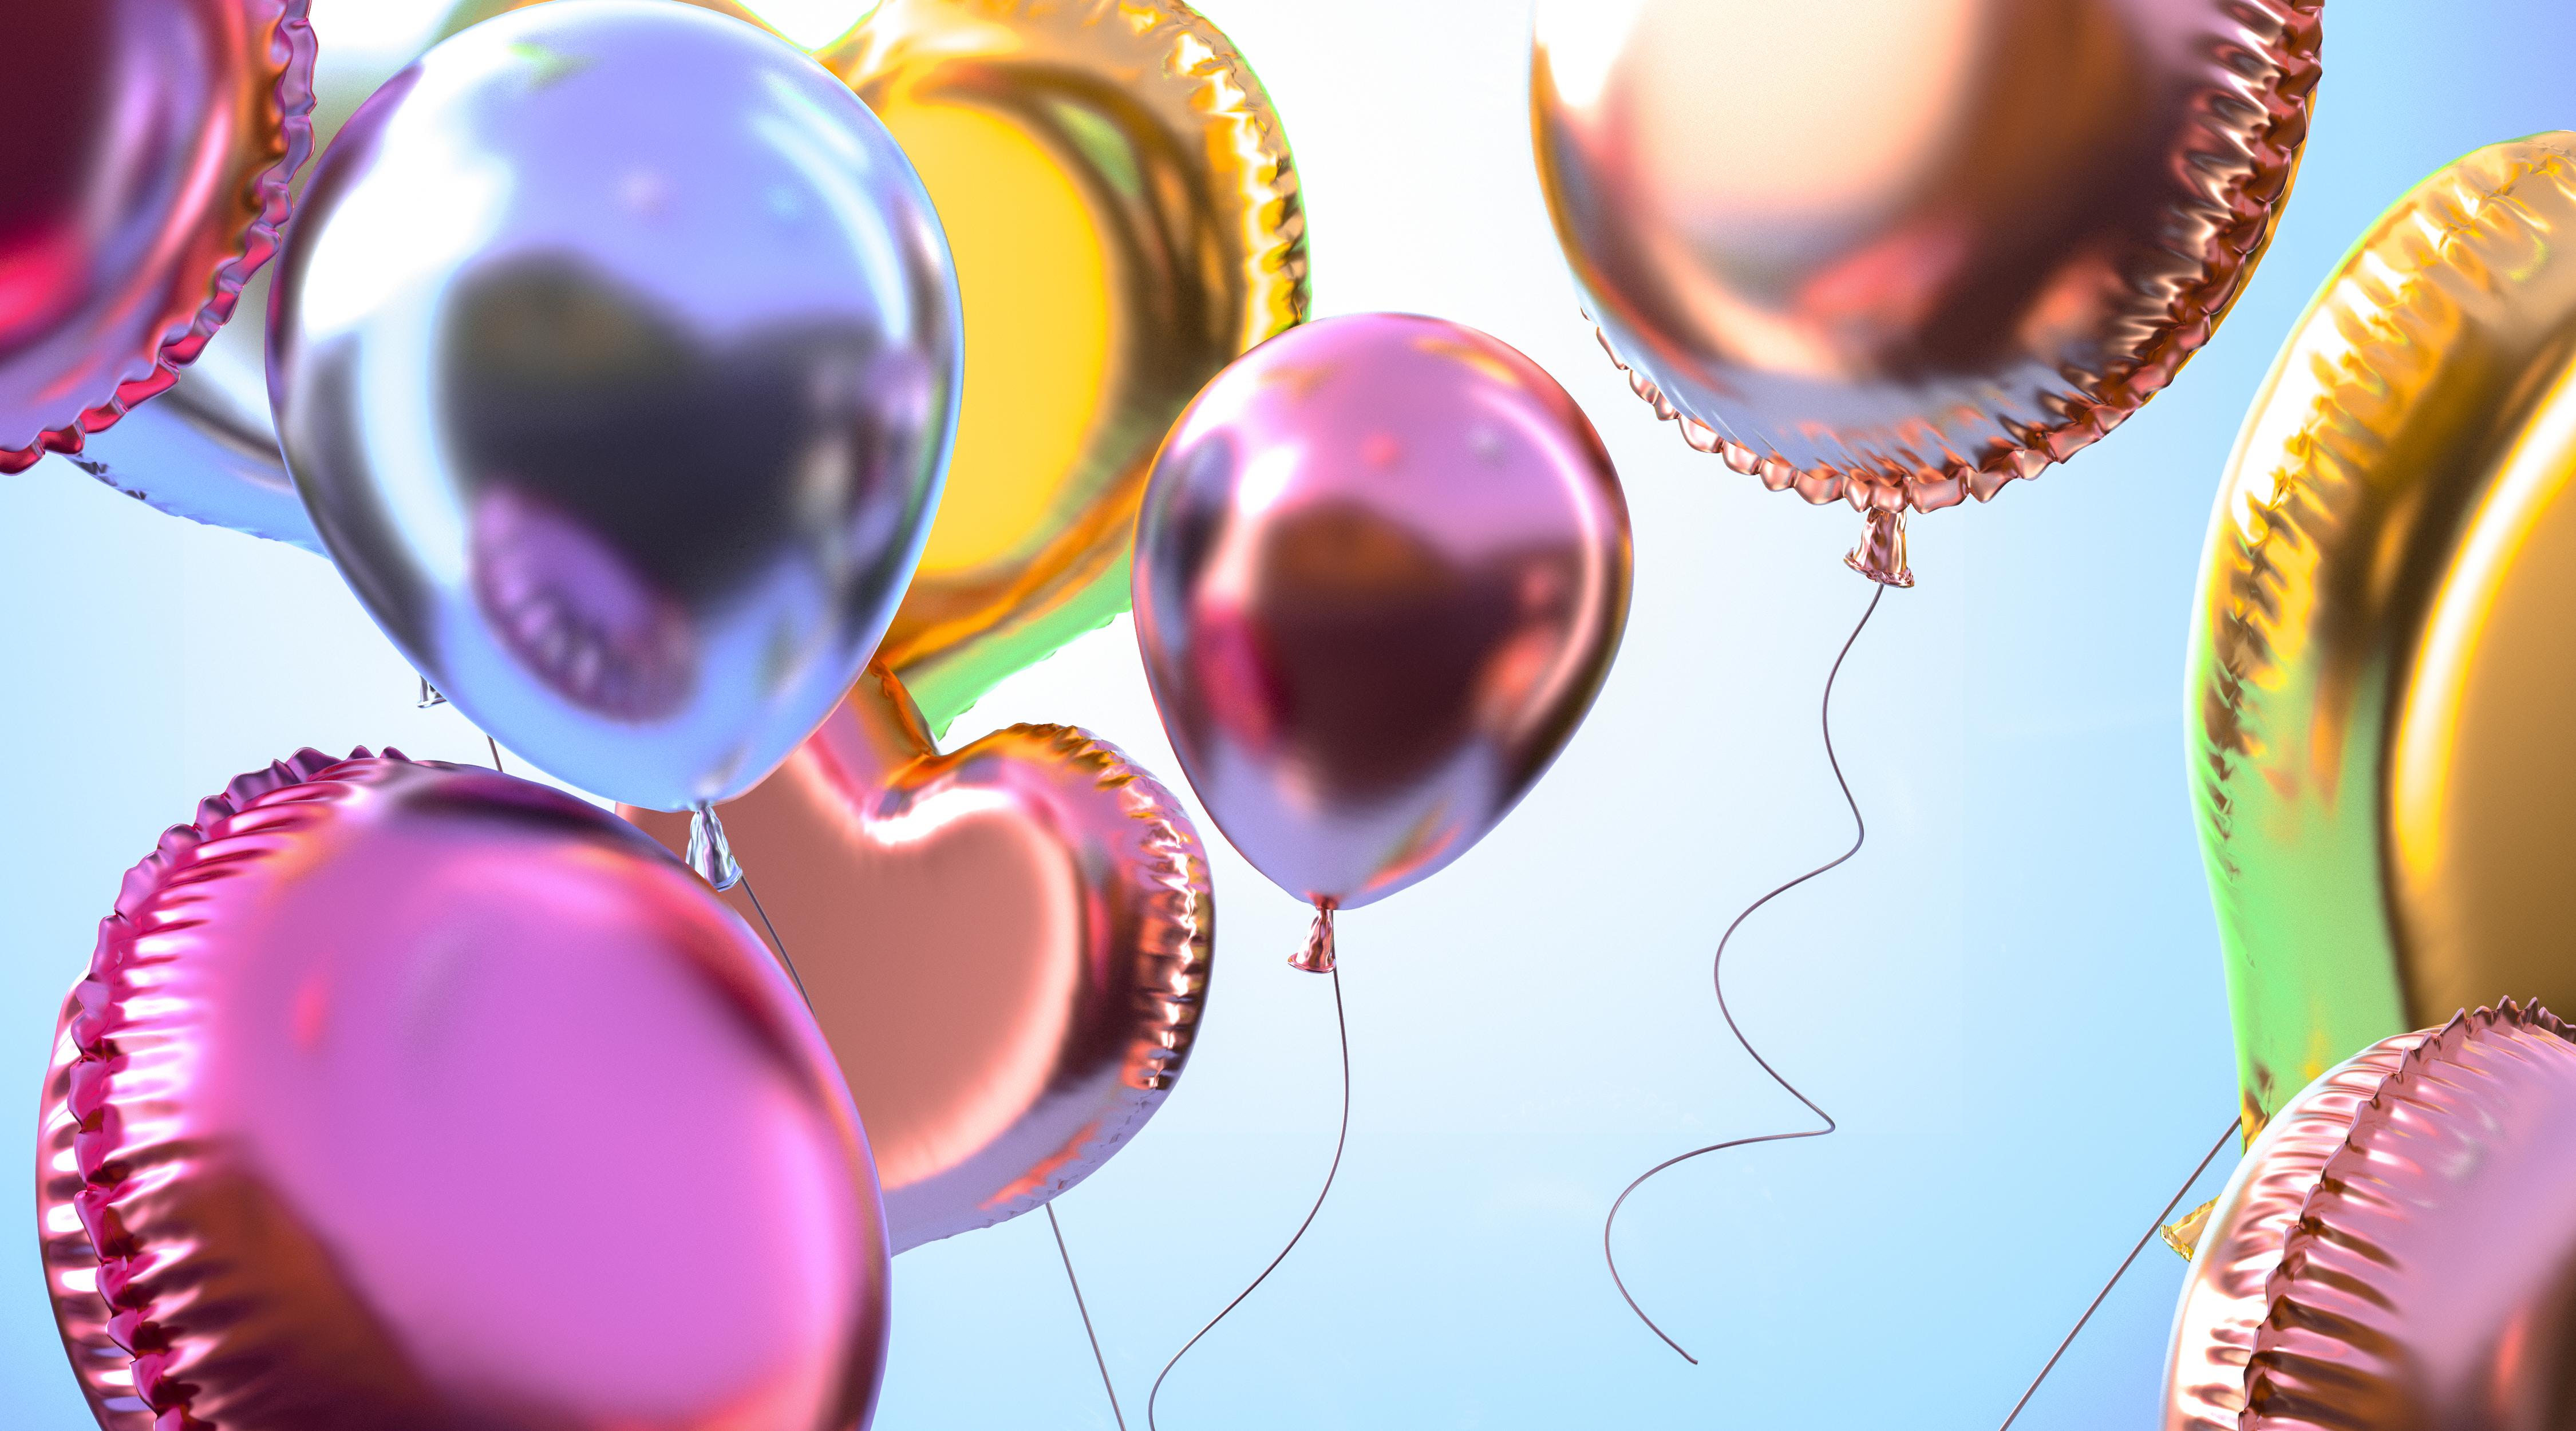 Ação de marketing com balões personalizados para o Dia das Crianças